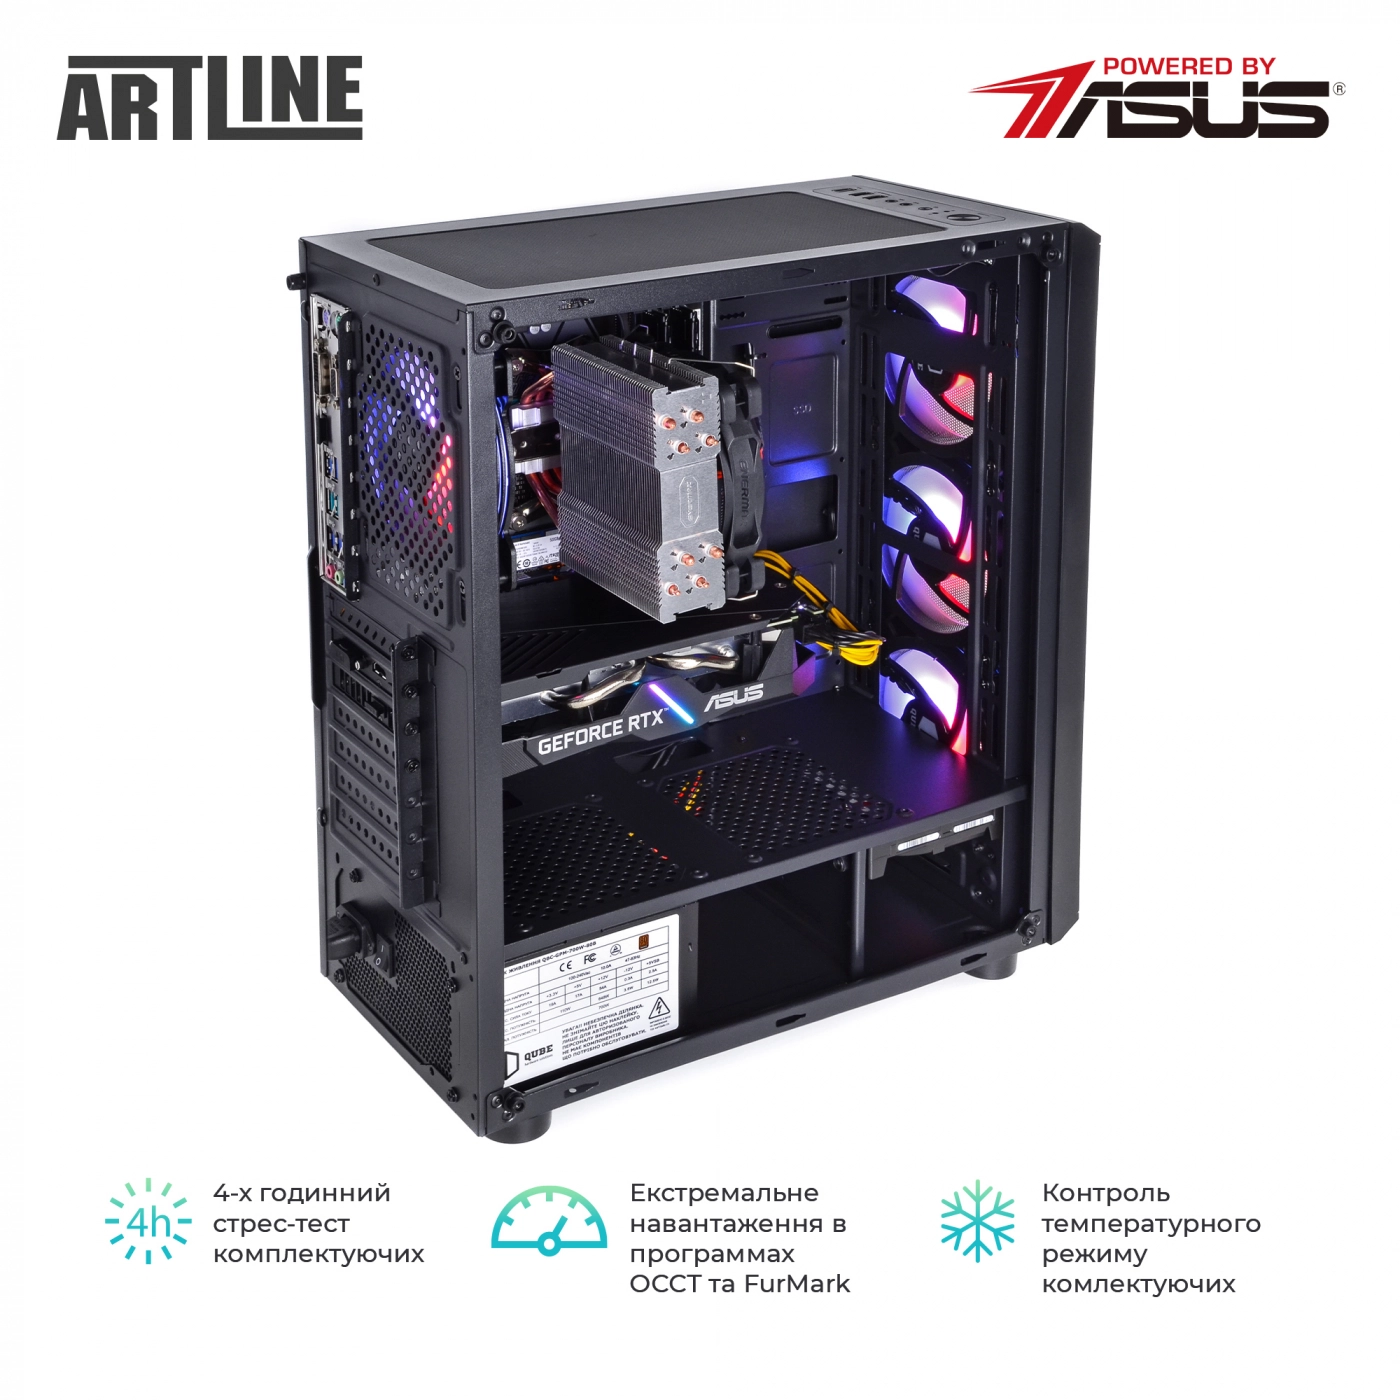 Купить Компьютер ARTLINE Gaming X85v16 - фото 11